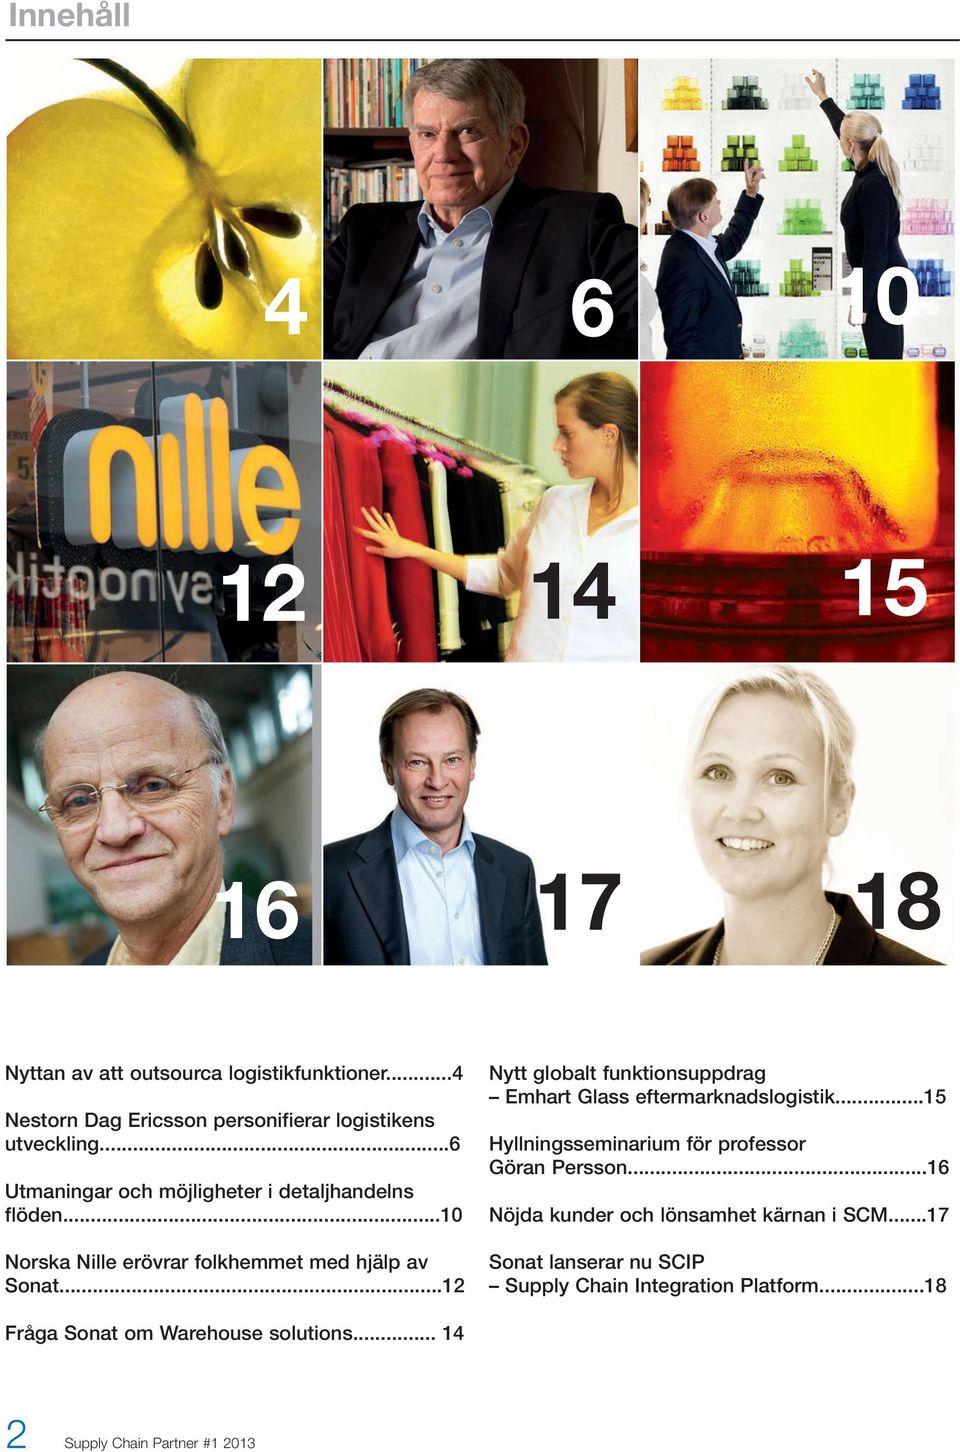 ..12 Nytt globalt funktionsuppdrag Emhart Glass eftermarknadslogistik...15 Hyllningsseminarium för professor Göran Persson.